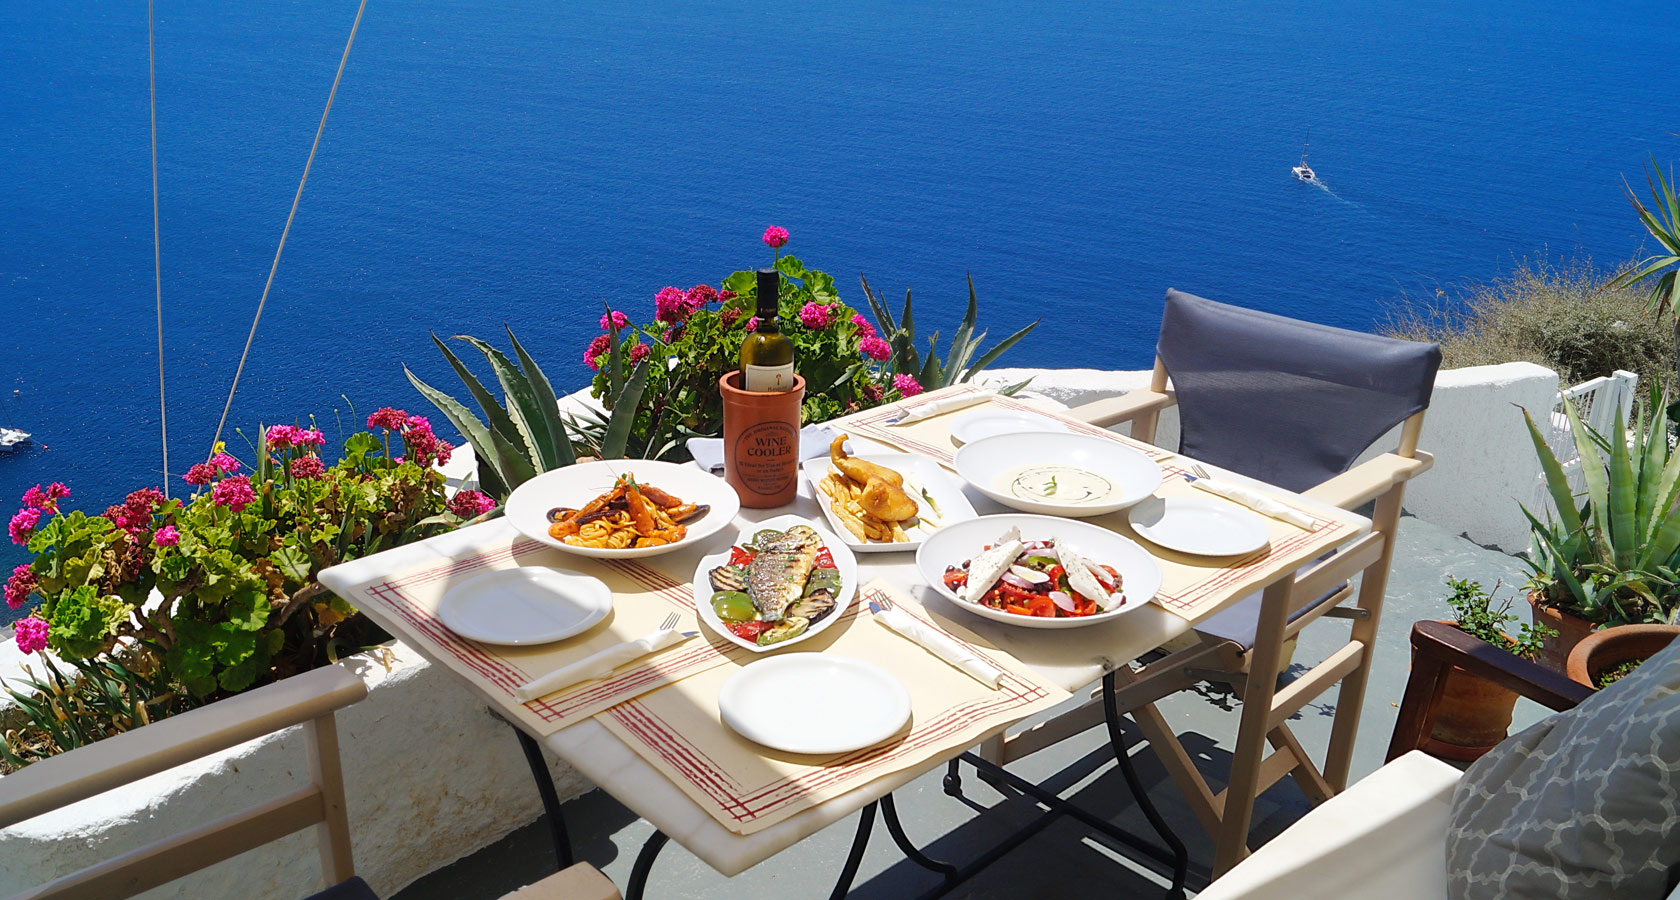 218° Santorini Café Restaurant in Oia – Magnificent Sea View